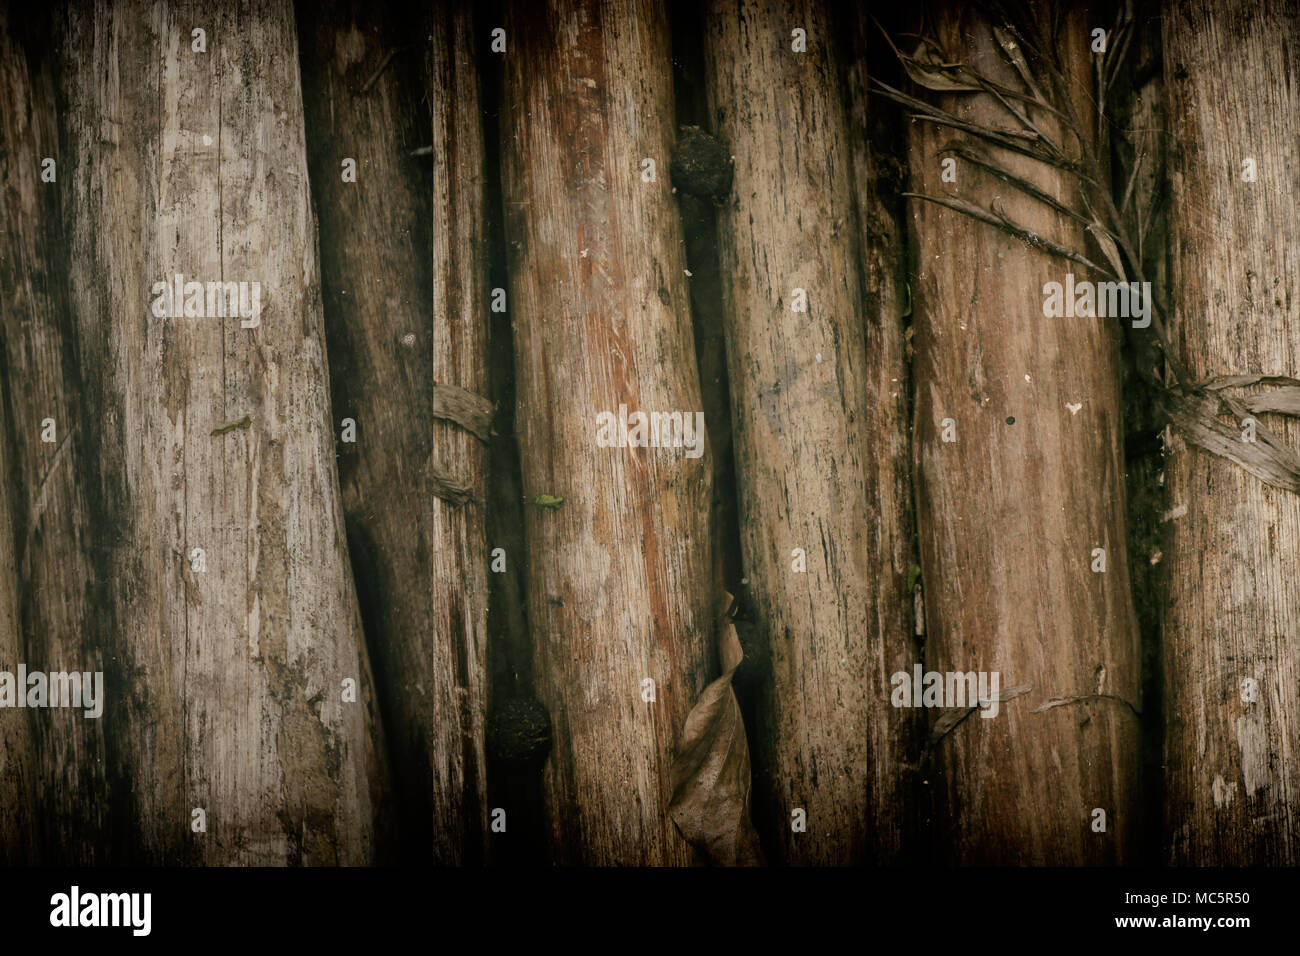 Bambus wand Textur Hintergrund. Holz- Textur für Website oder mobile Geräte Stockfoto